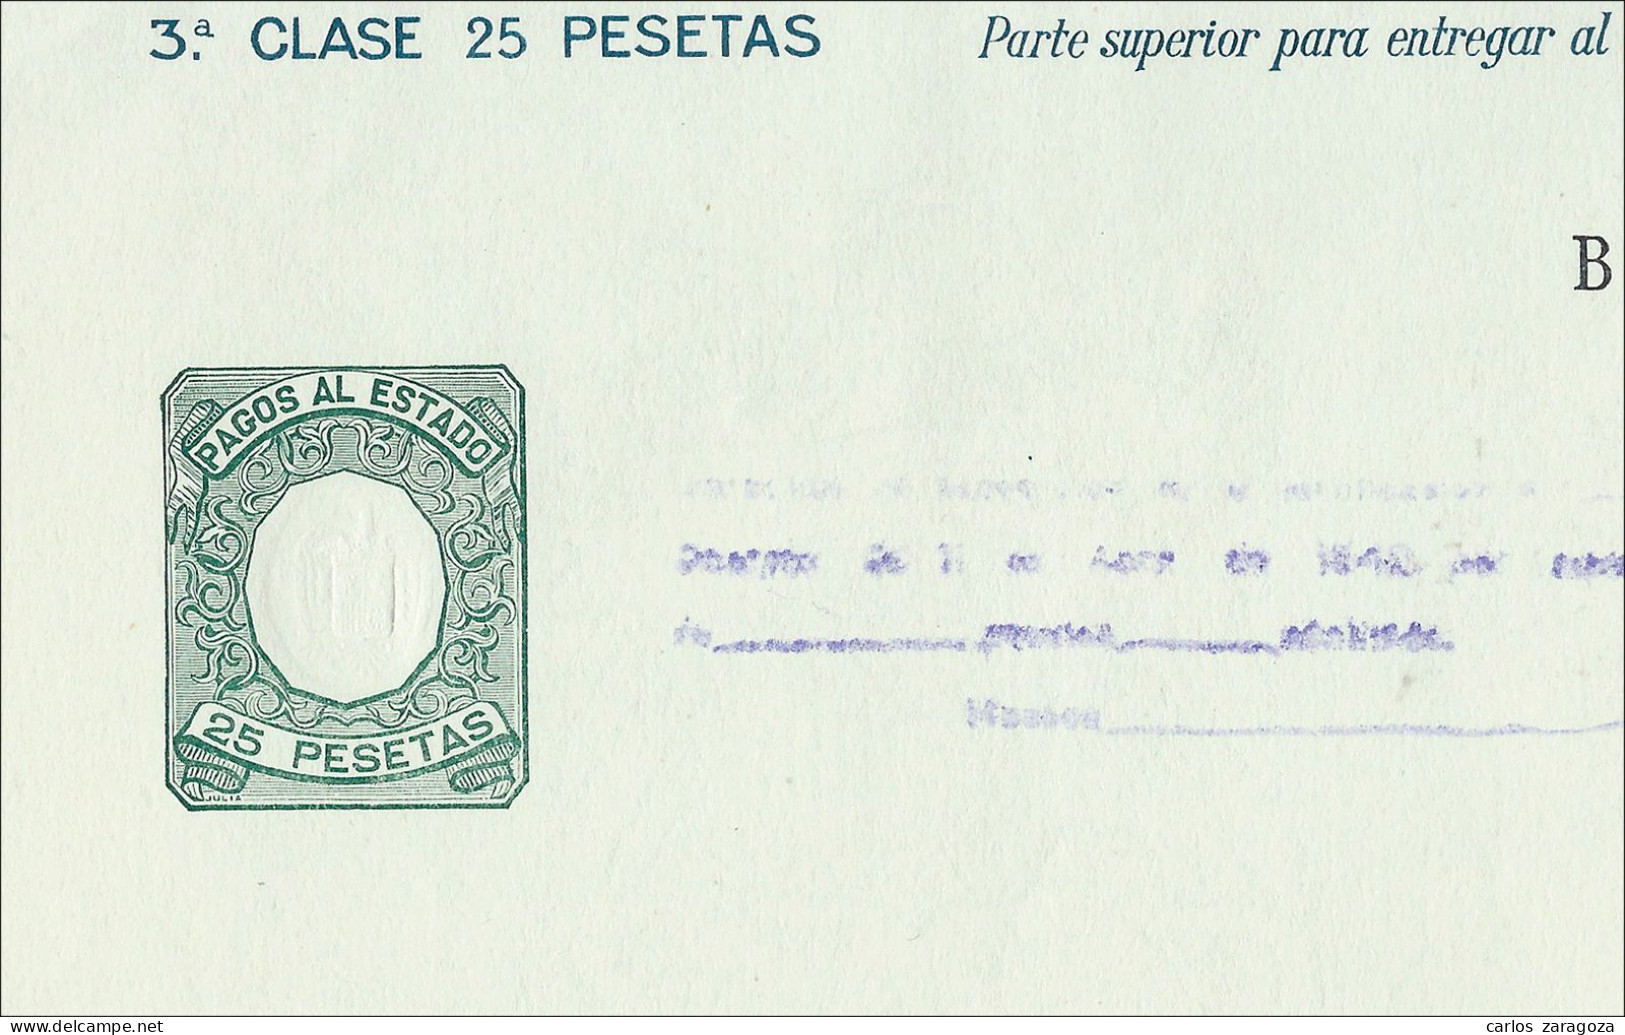 ESPAÑA 1942—PAGOS AL ESTADO 25 Ptas—Marca De Agua: AGUILA + TIMBRE DEL ESTADO - Steuermarken